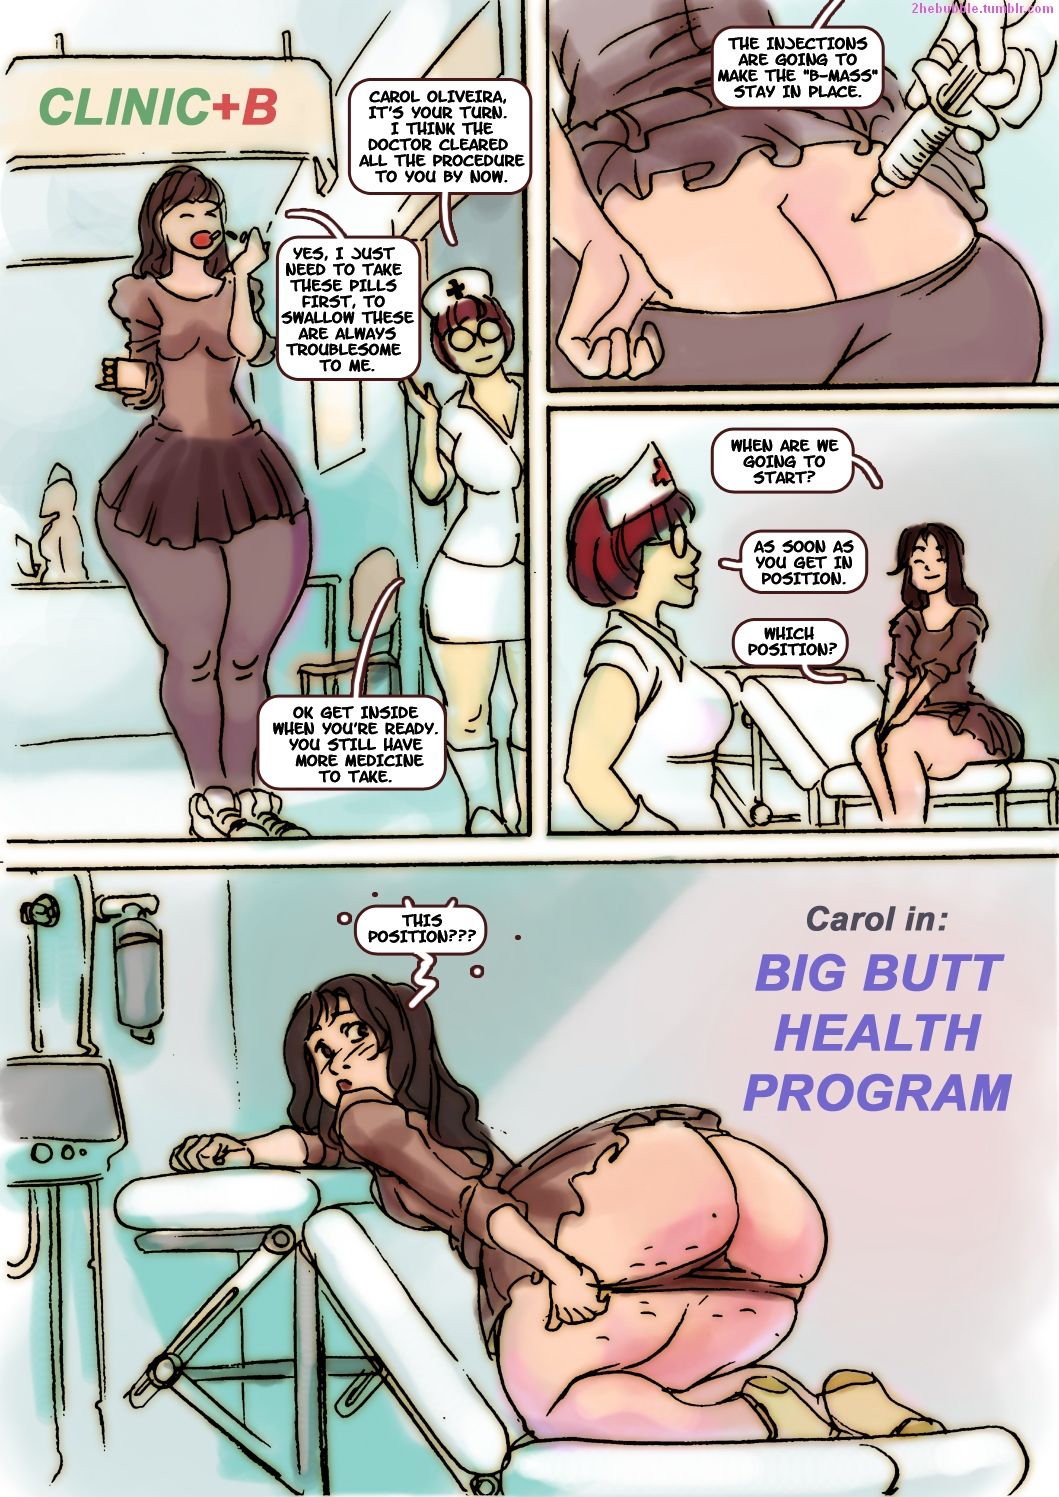 Big booty cartoon porn comics